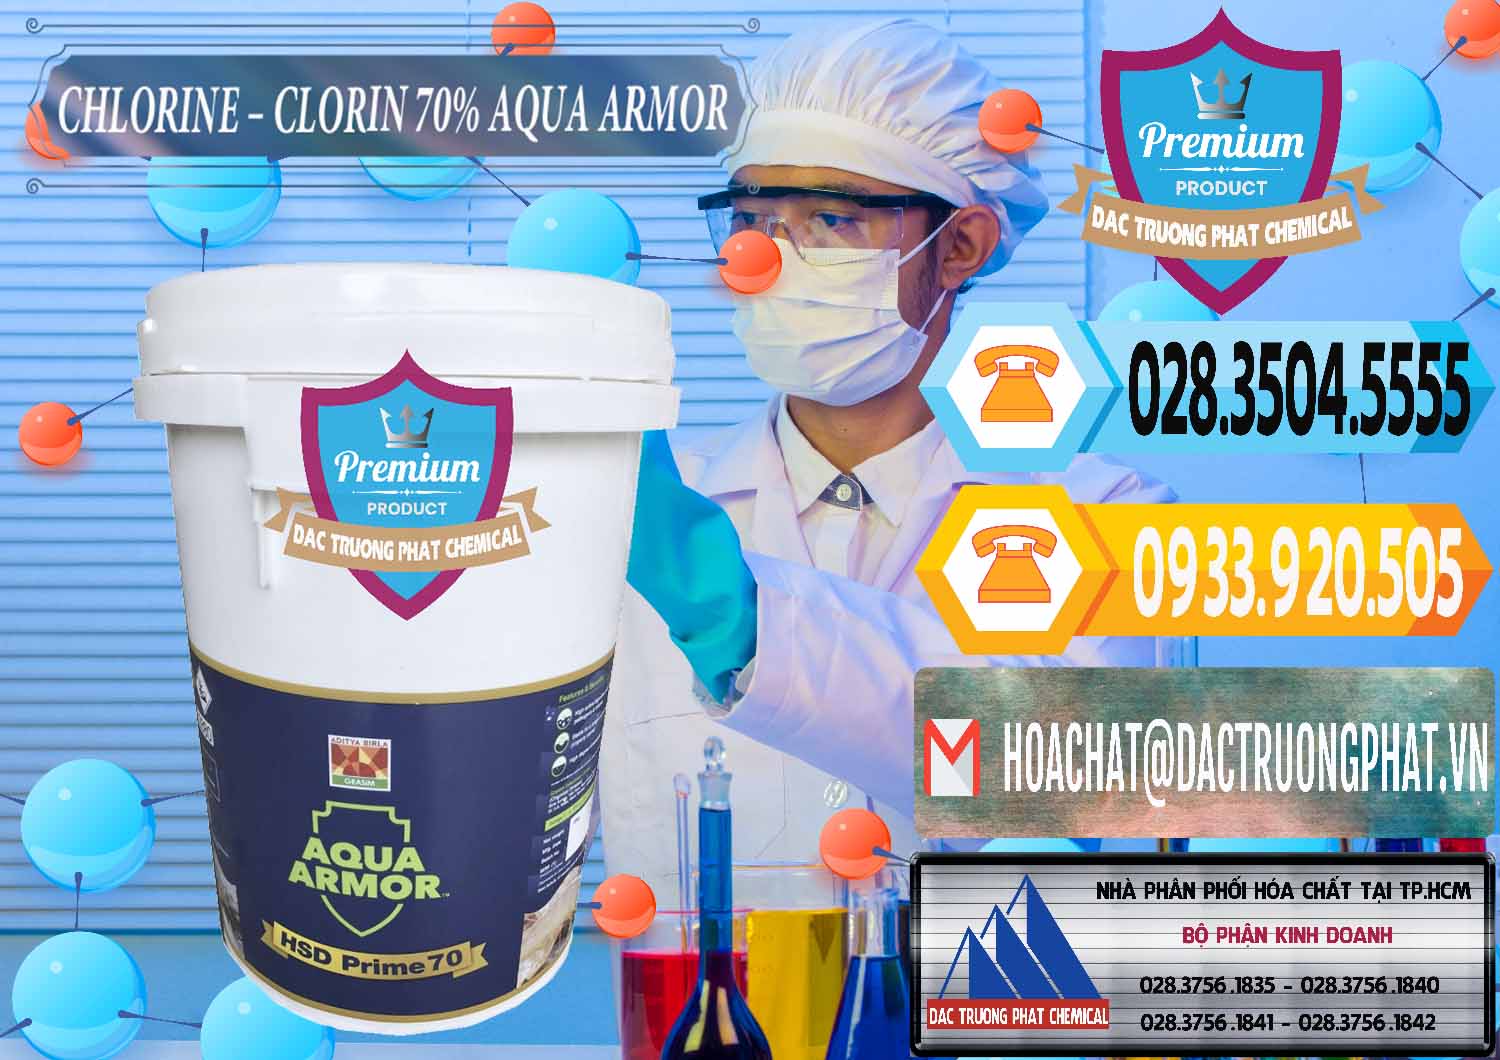 Chuyên bán & cung ứng Chlorine – Clorin 70% Aqua Armor Aditya Birla Grasim Ấn Độ India - 0241 - Chuyên bán ( phân phối ) hóa chất tại TP.HCM - hoachattayrua.net